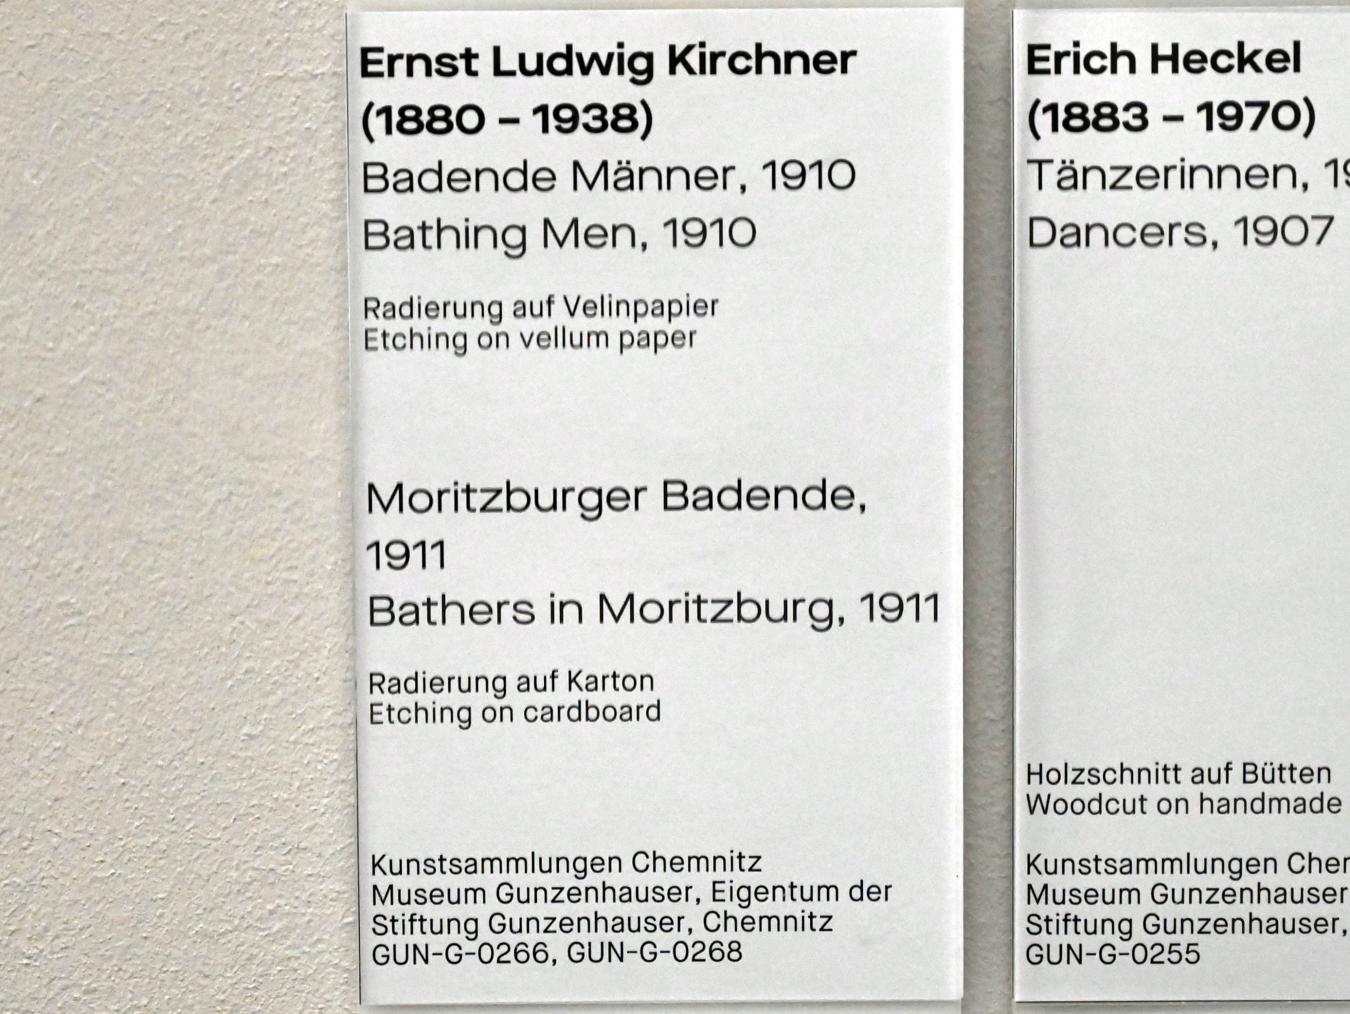 Ernst Ludwig Kirchner (1904–1933), Badende Männer, Chemnitz, Museum Gunzenhauser, Saal 3.7 - Die Brücke, 1910, Bild 3/3